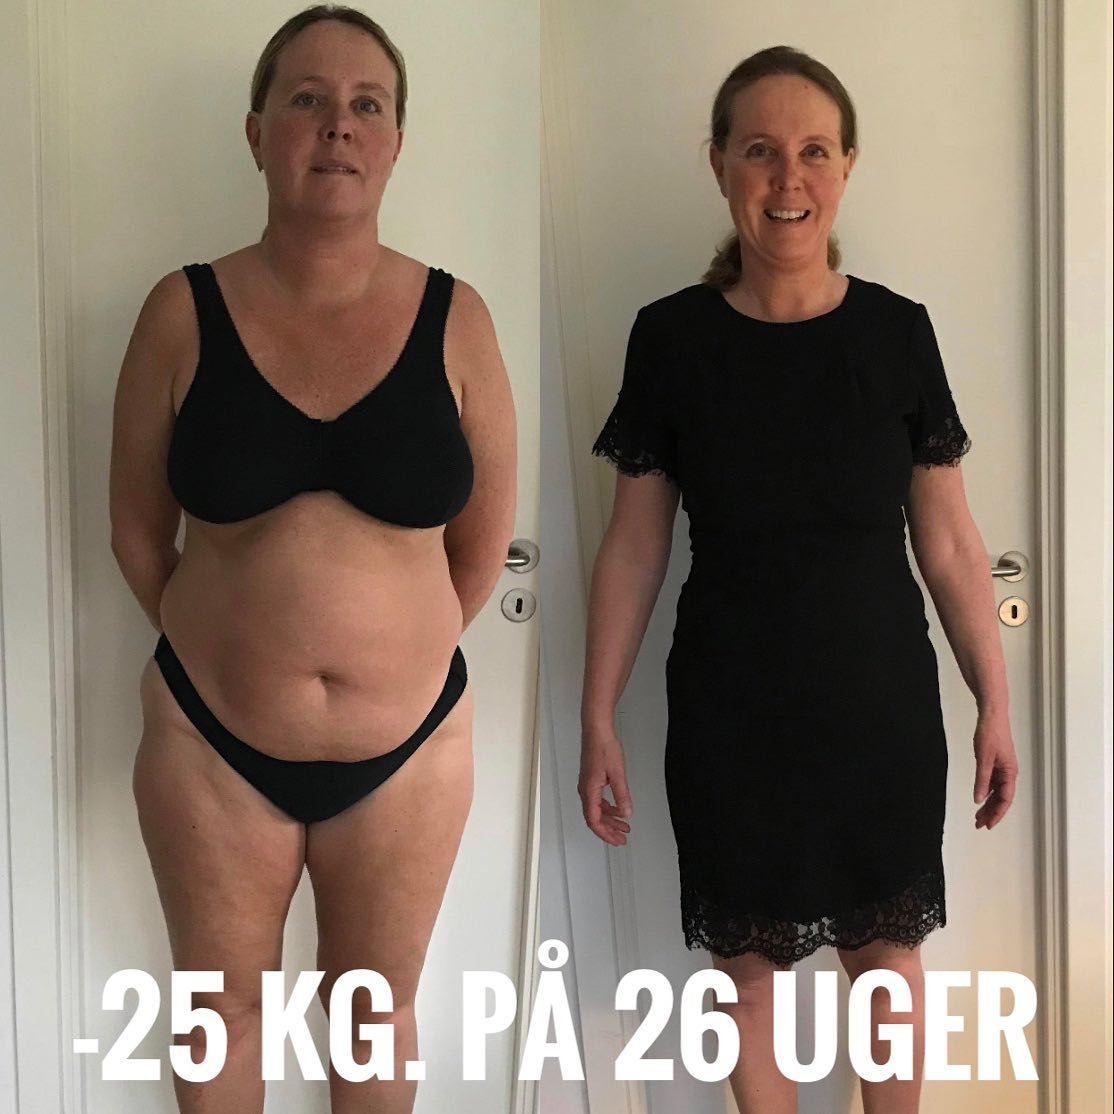 Jane-har-tabt-25-kilo-på-26-uger-på-en-skræddersyet-vægttabs-kostplan..jpg